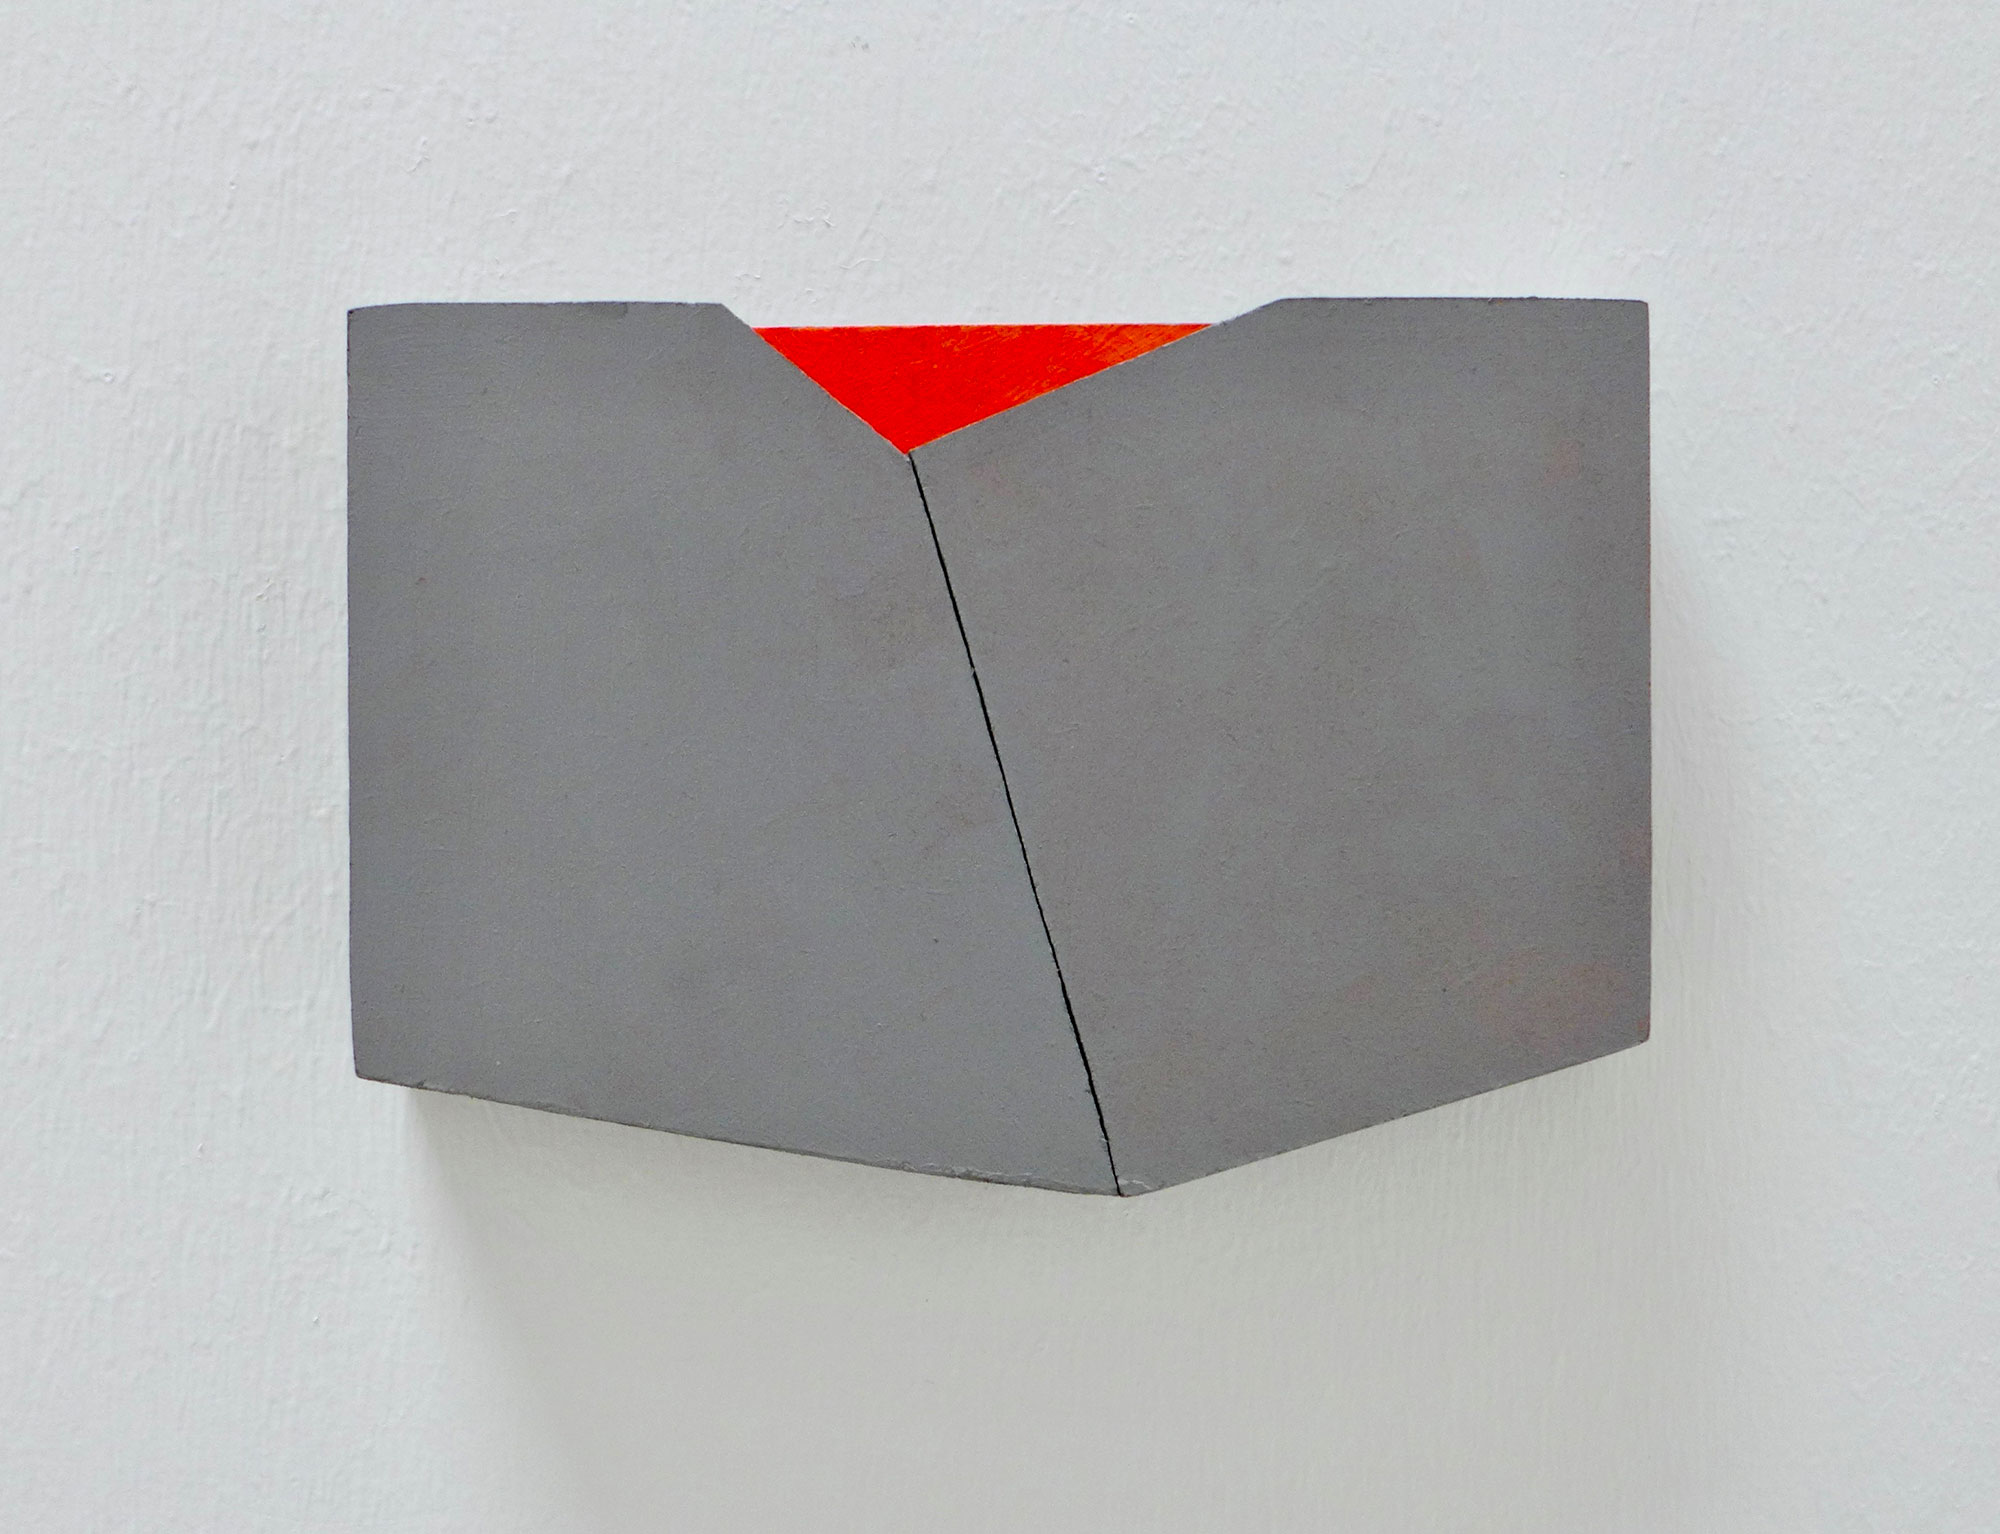 Kenneth Dingwall, Small Accord, 2012, casein & acrylic on mdf, 10 x 14.5 x 2.5cm